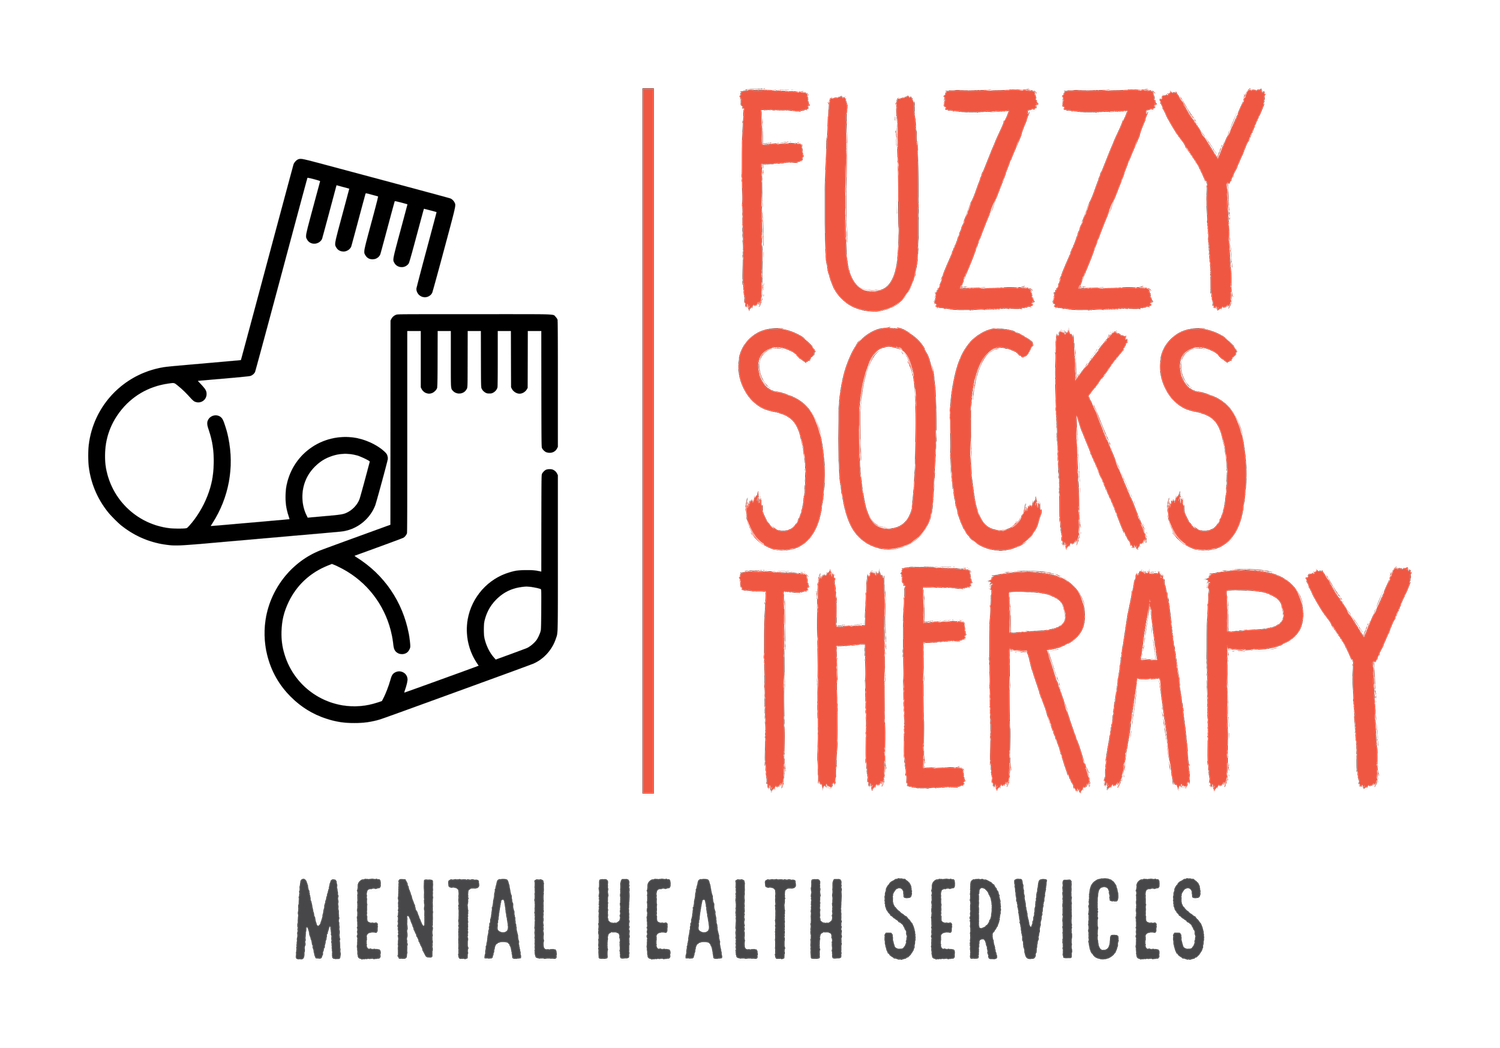 Fuzzy Socks Therapy